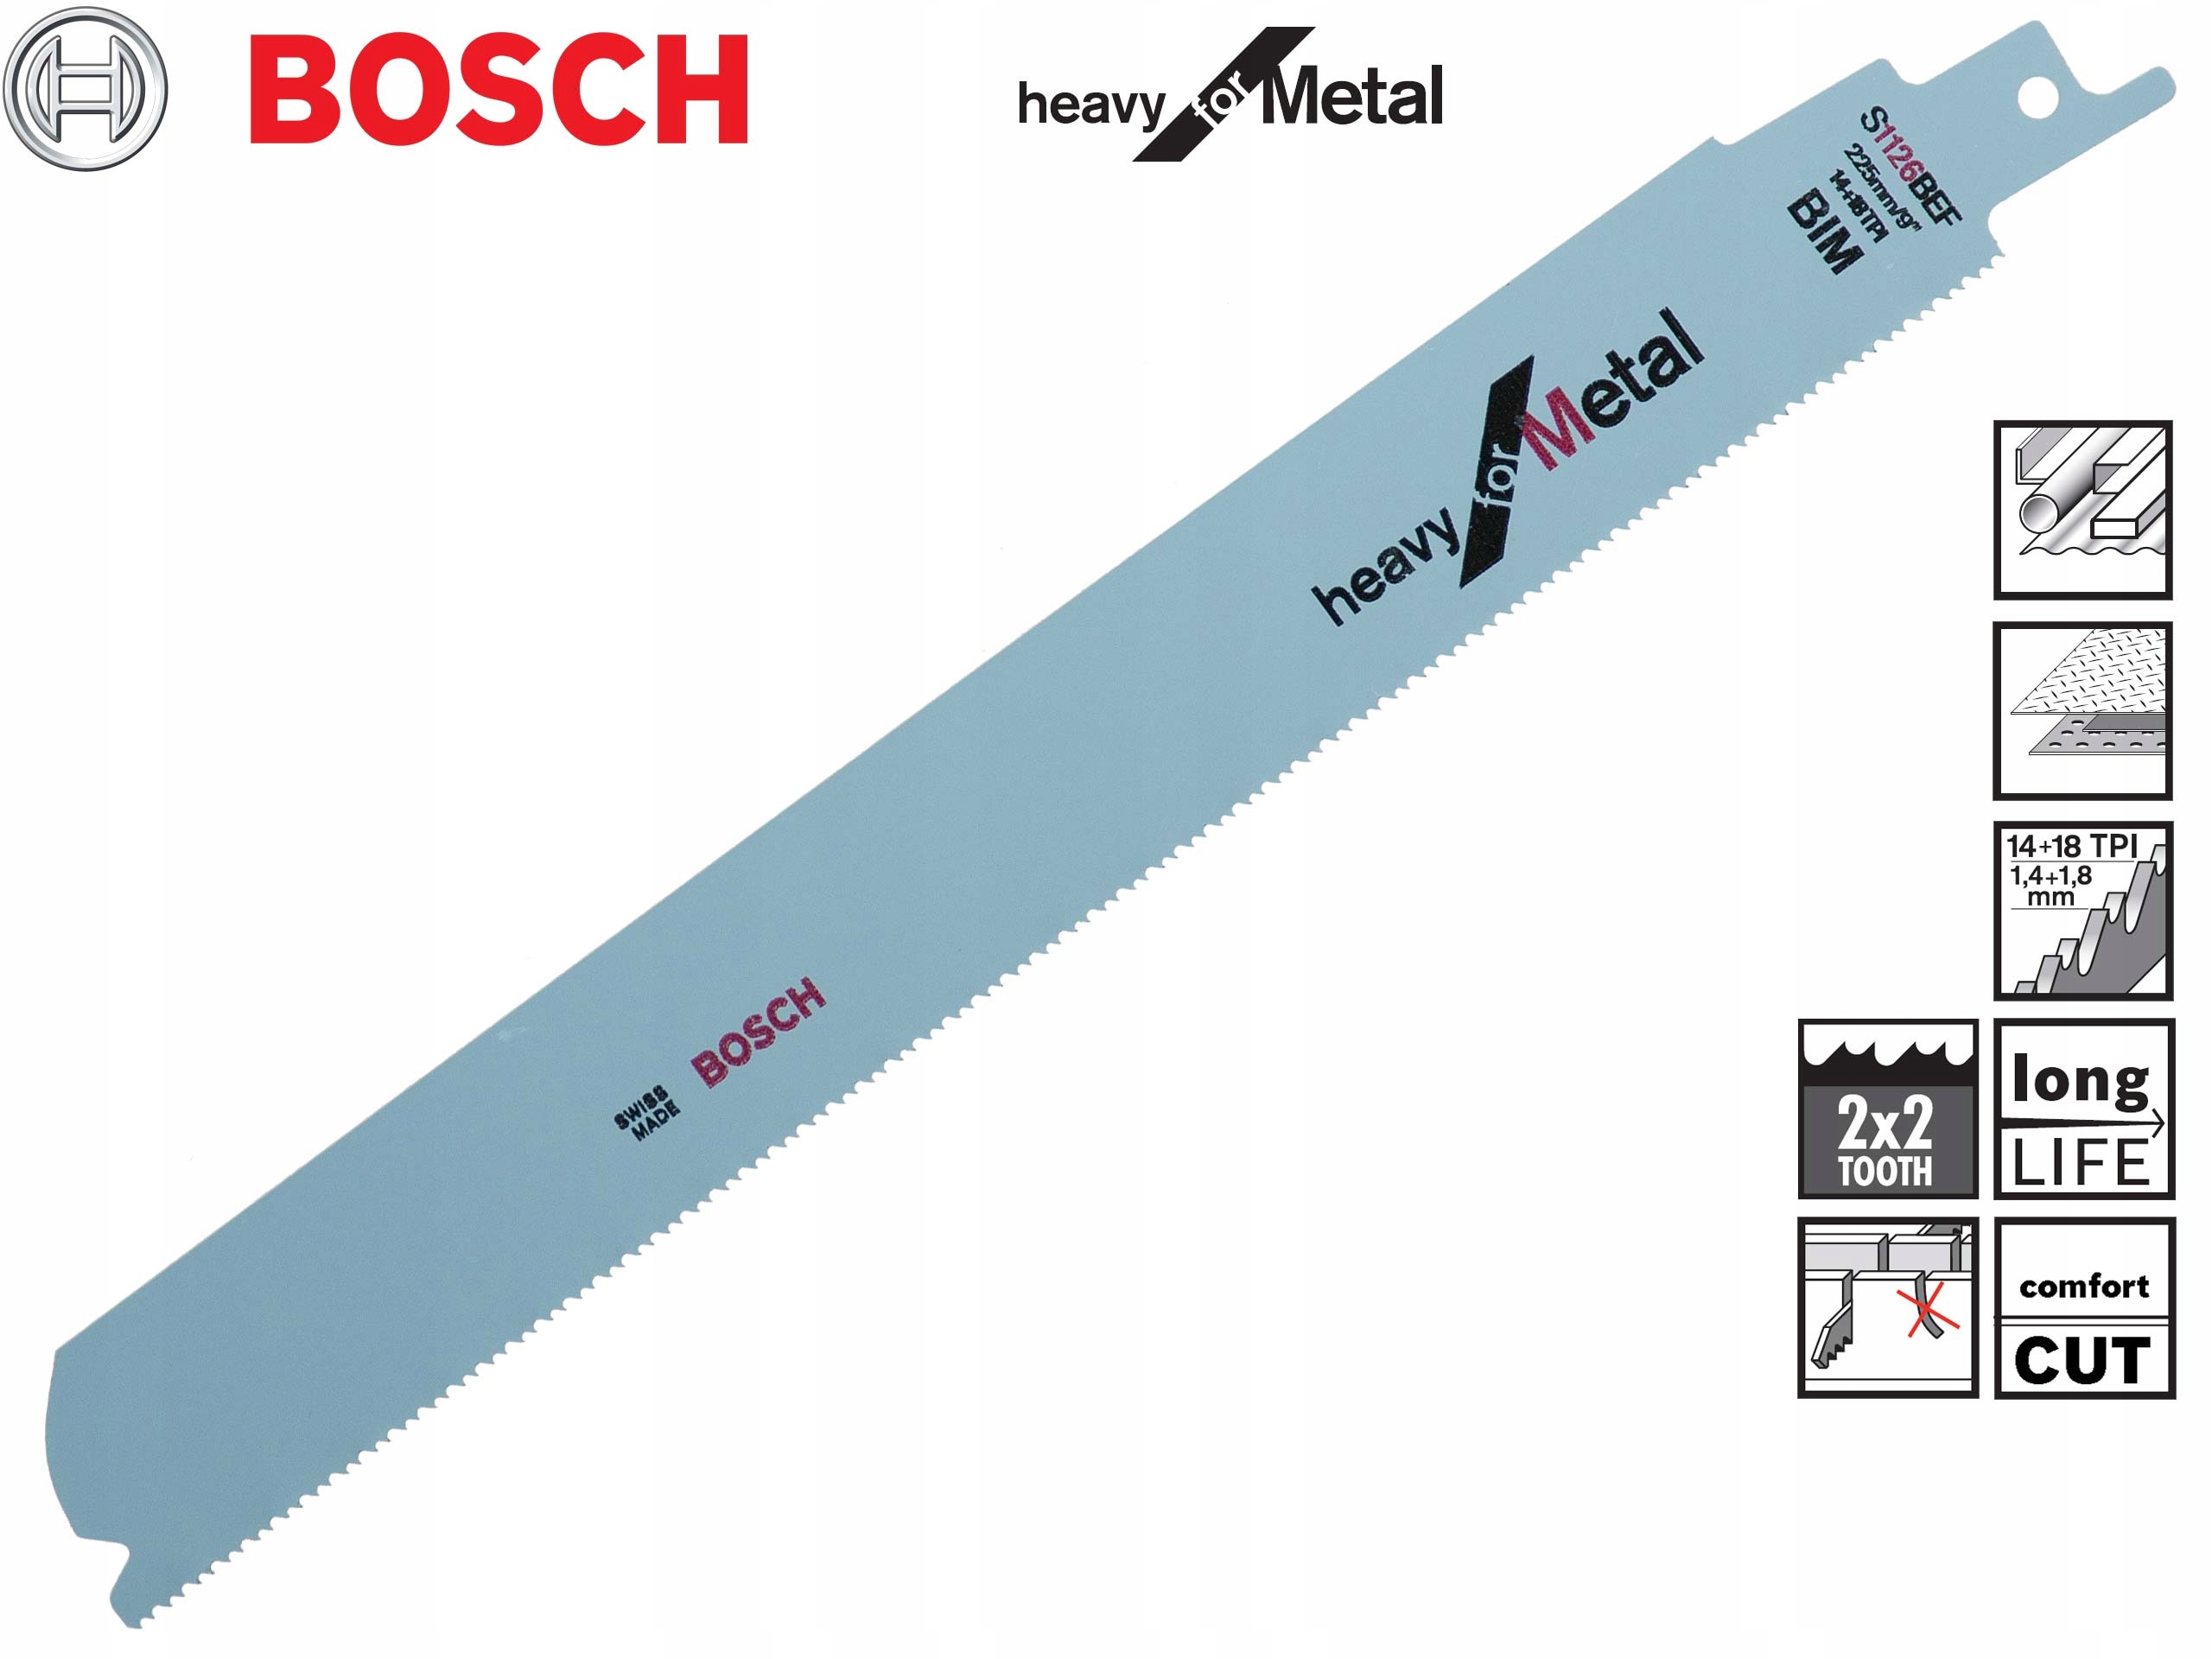 Пильный диск BOSCH S 1126 BEF для металла 225 мм марки Bosch